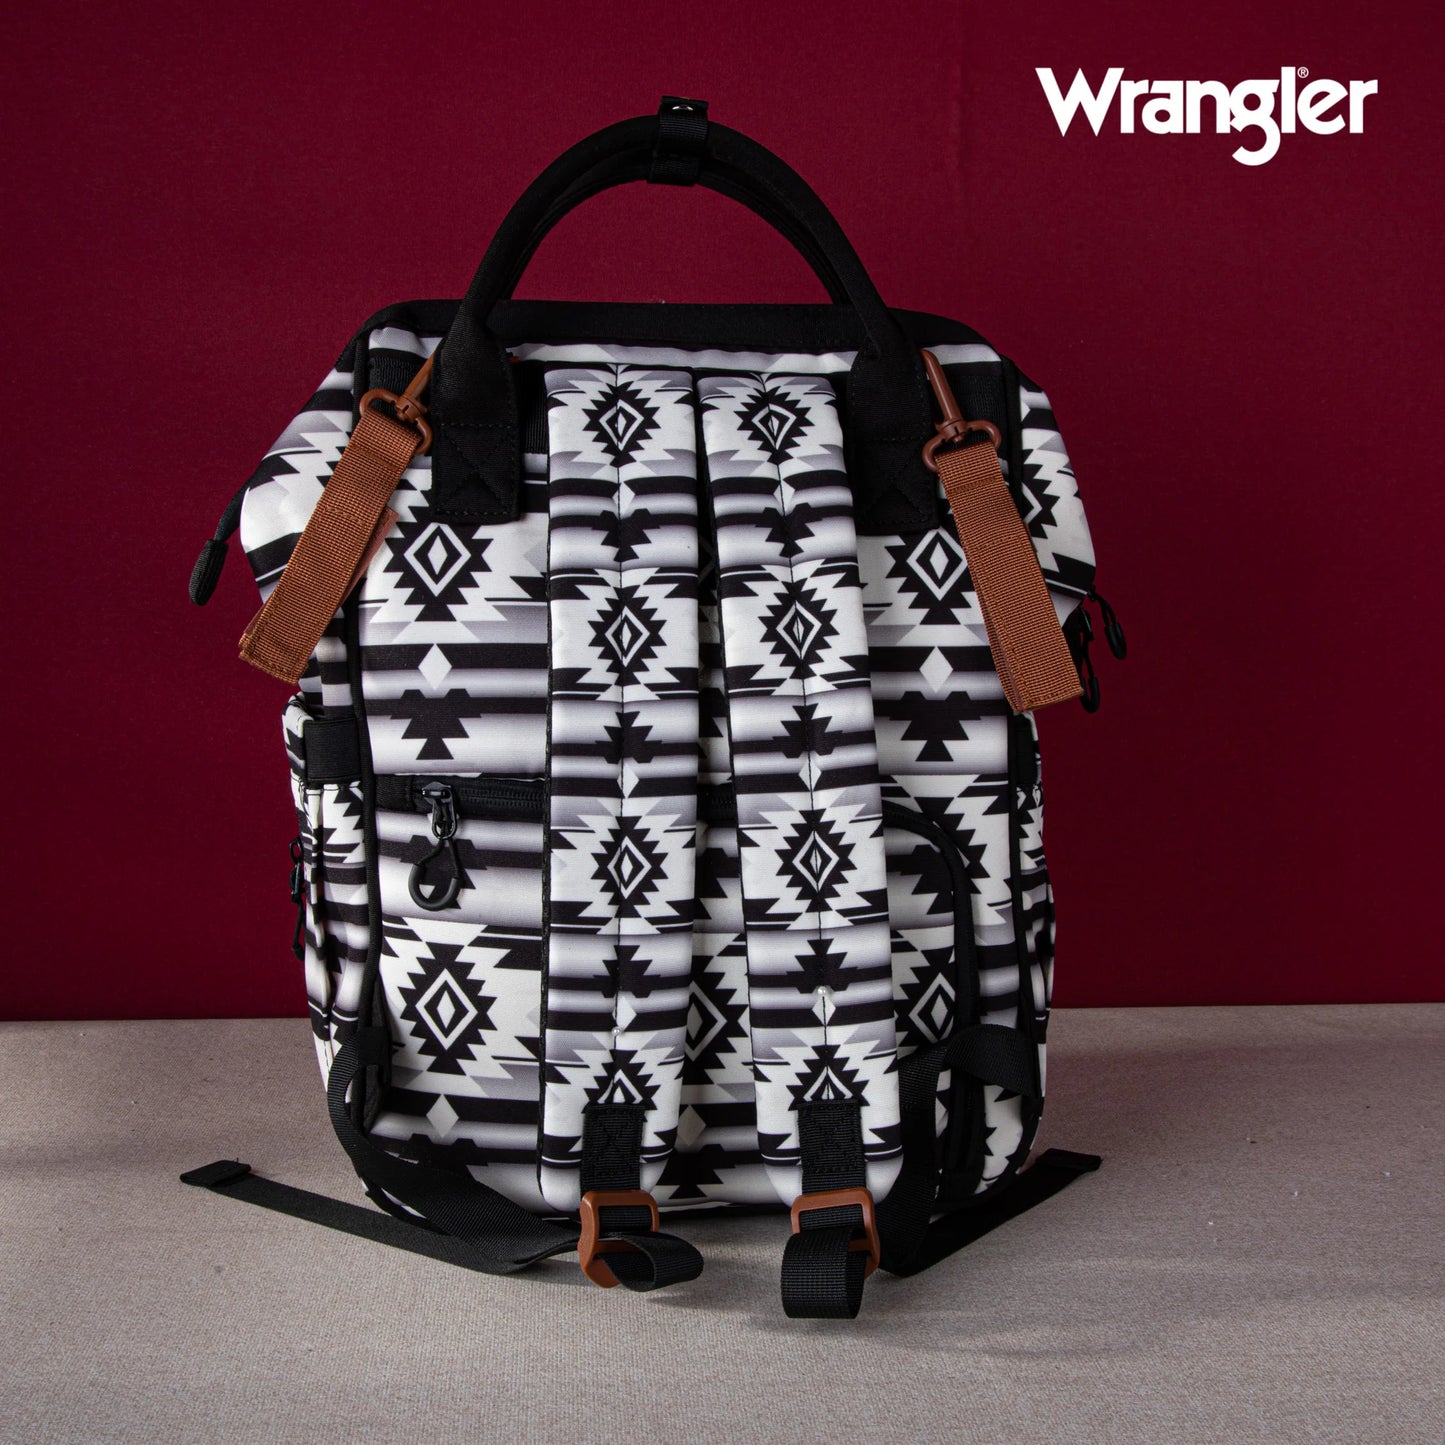 Wrangler Allover Aztec Printed Backpack - Black/White